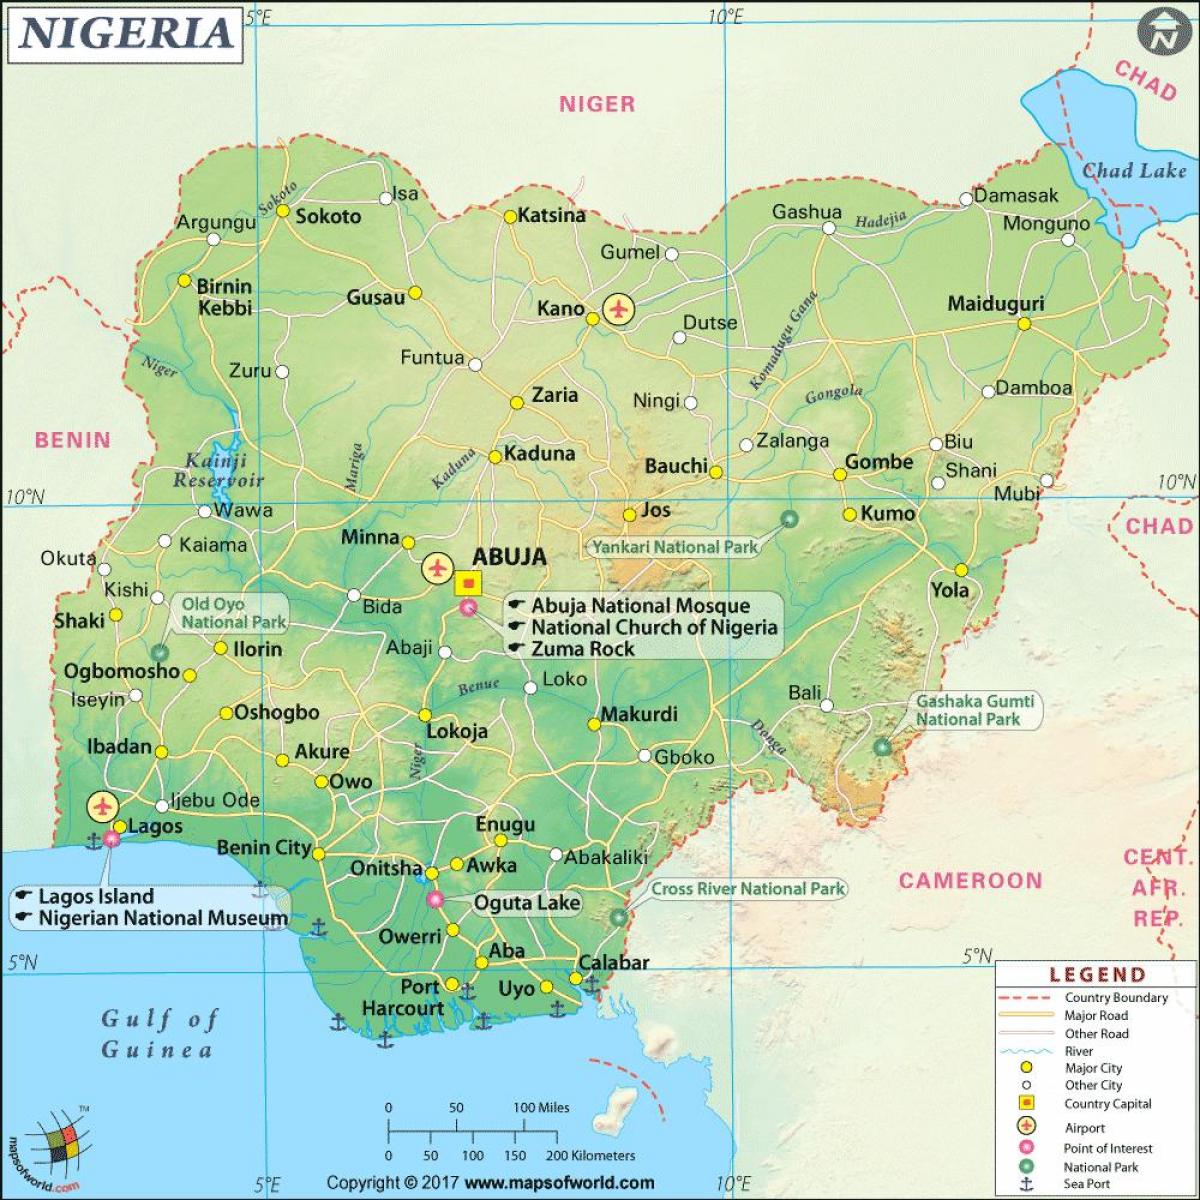 fotky z nigerijské mapě